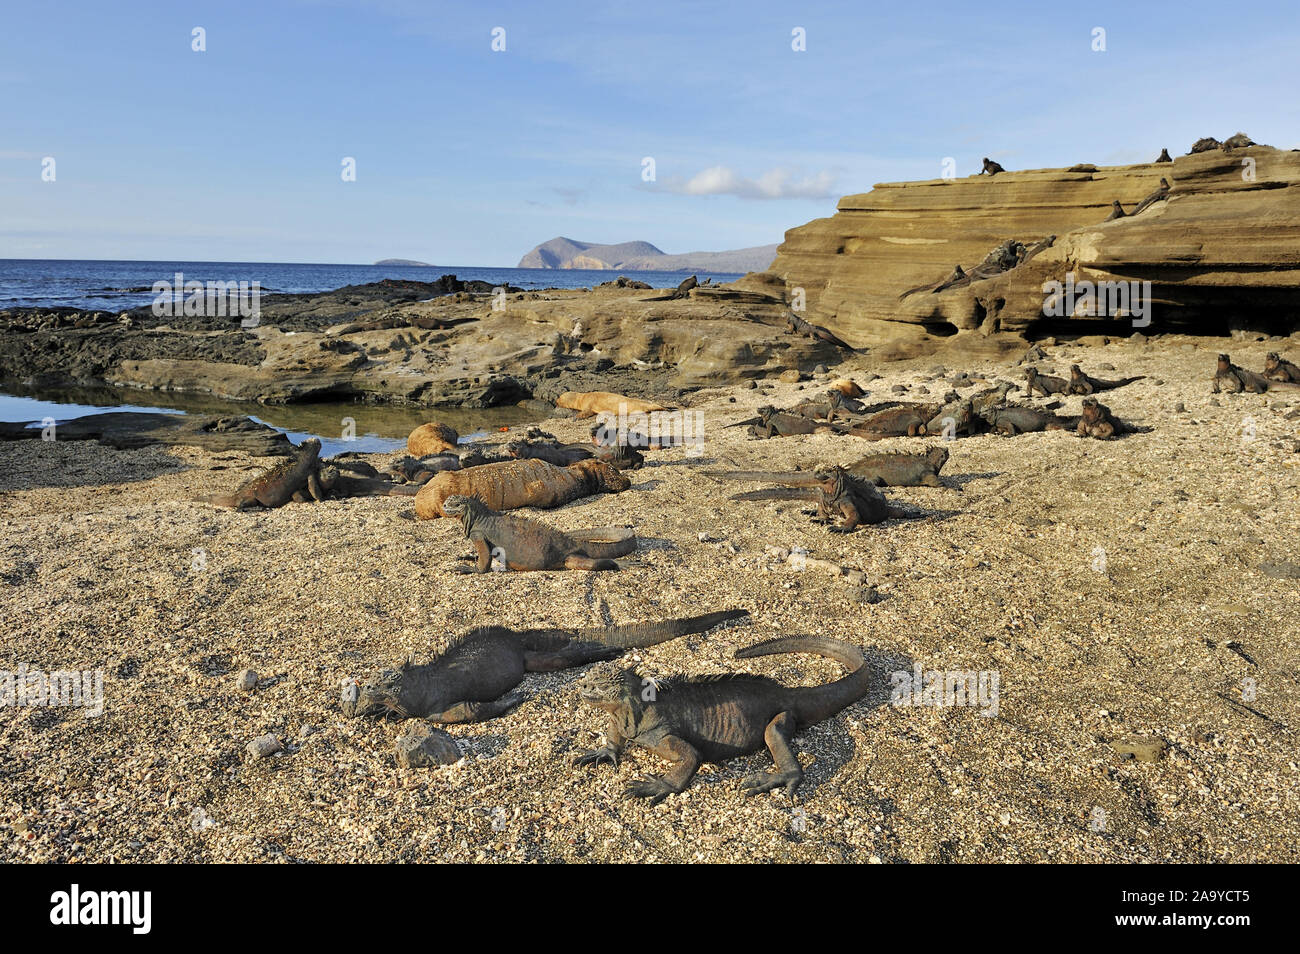 Bucht von Puerto Egas mit Meerechsen (Amblyrhynchus cristatus) im Vordergrund, Insel Santiago, Galapagos, Ecuador, Südamerika Stock Photo